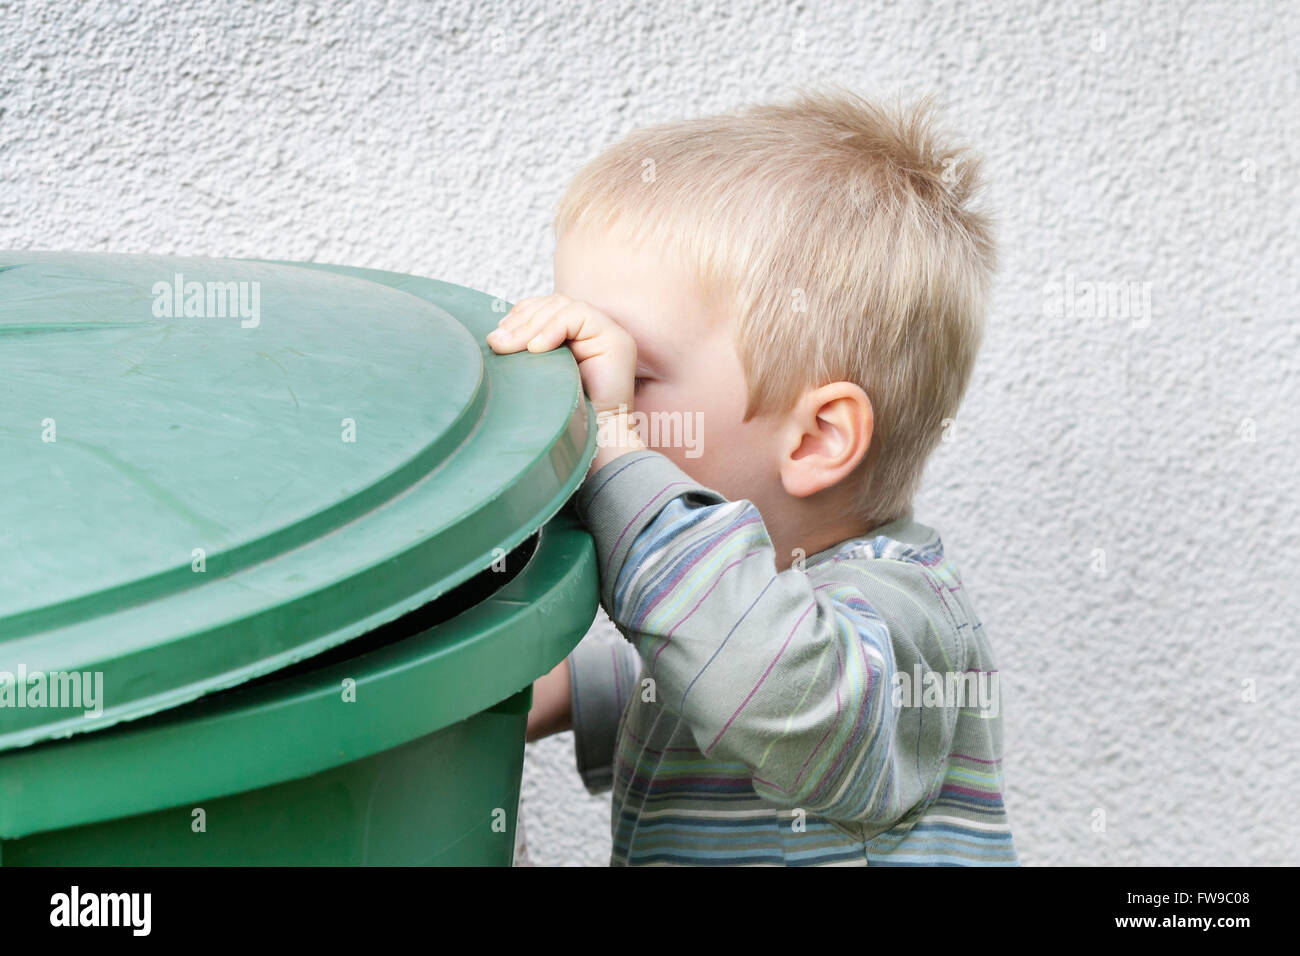 Petit garçon regardant dans une poubelle Banque D'Images